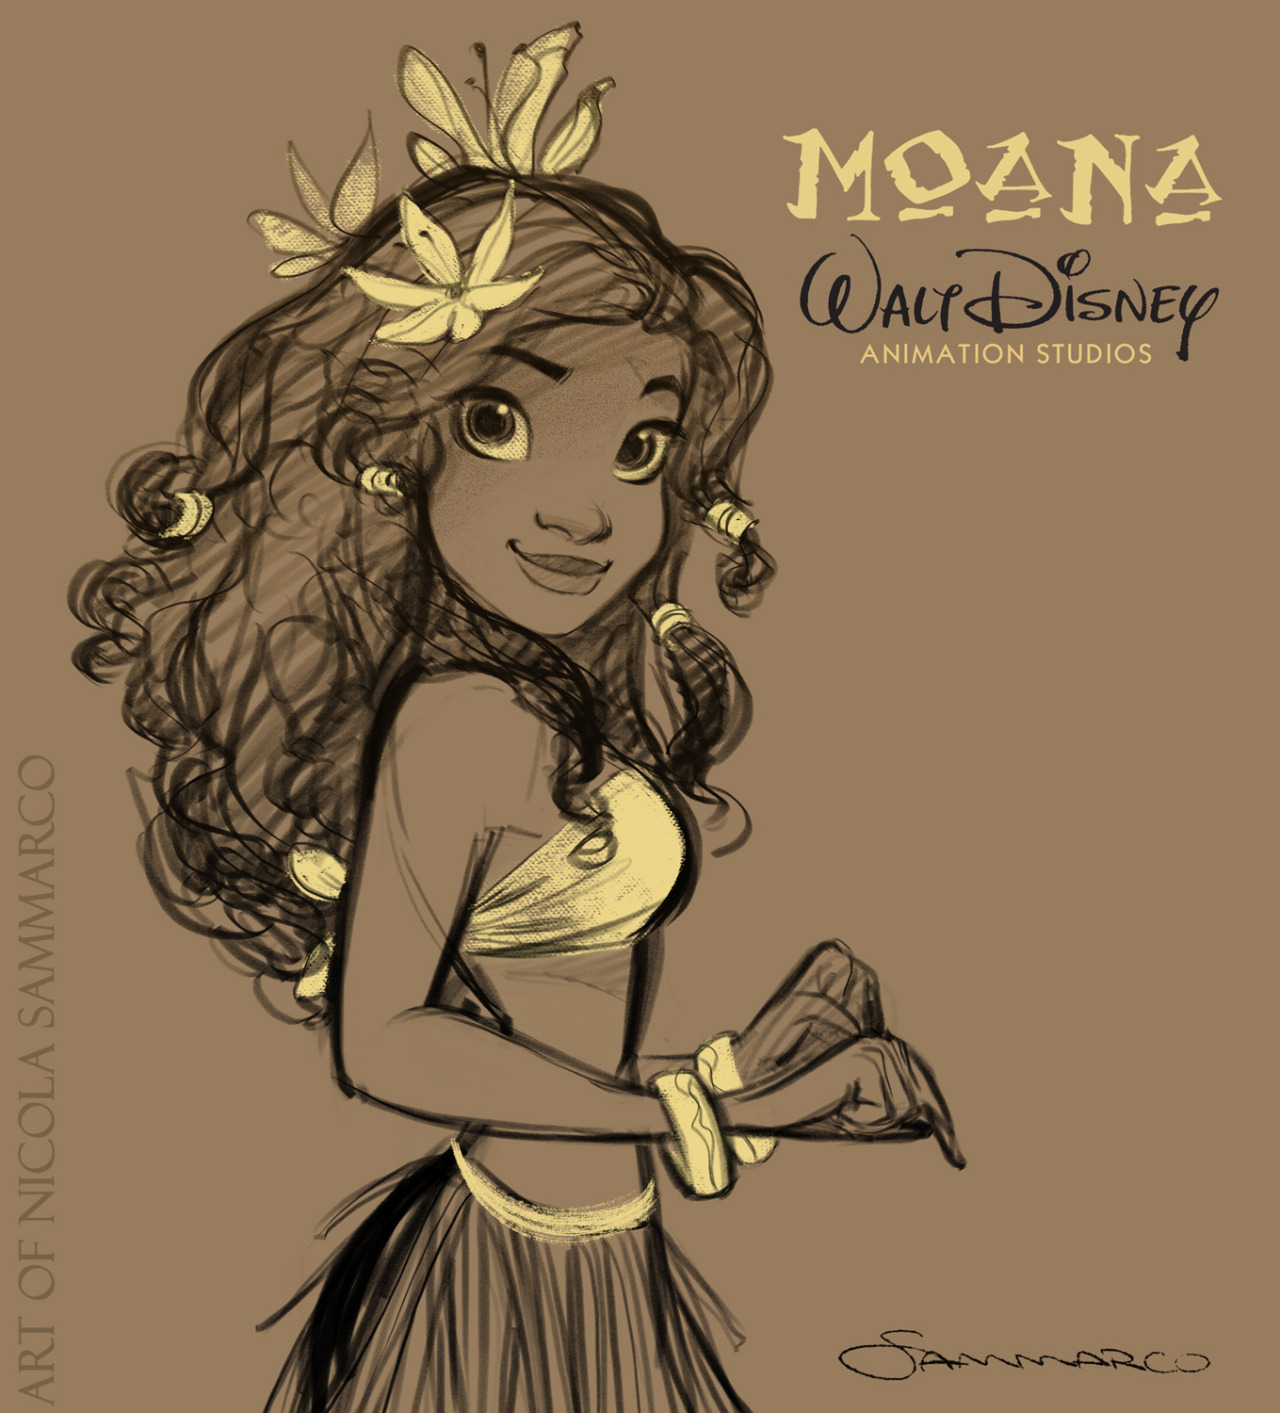 Moana - The Maona princess with the demigod Maui